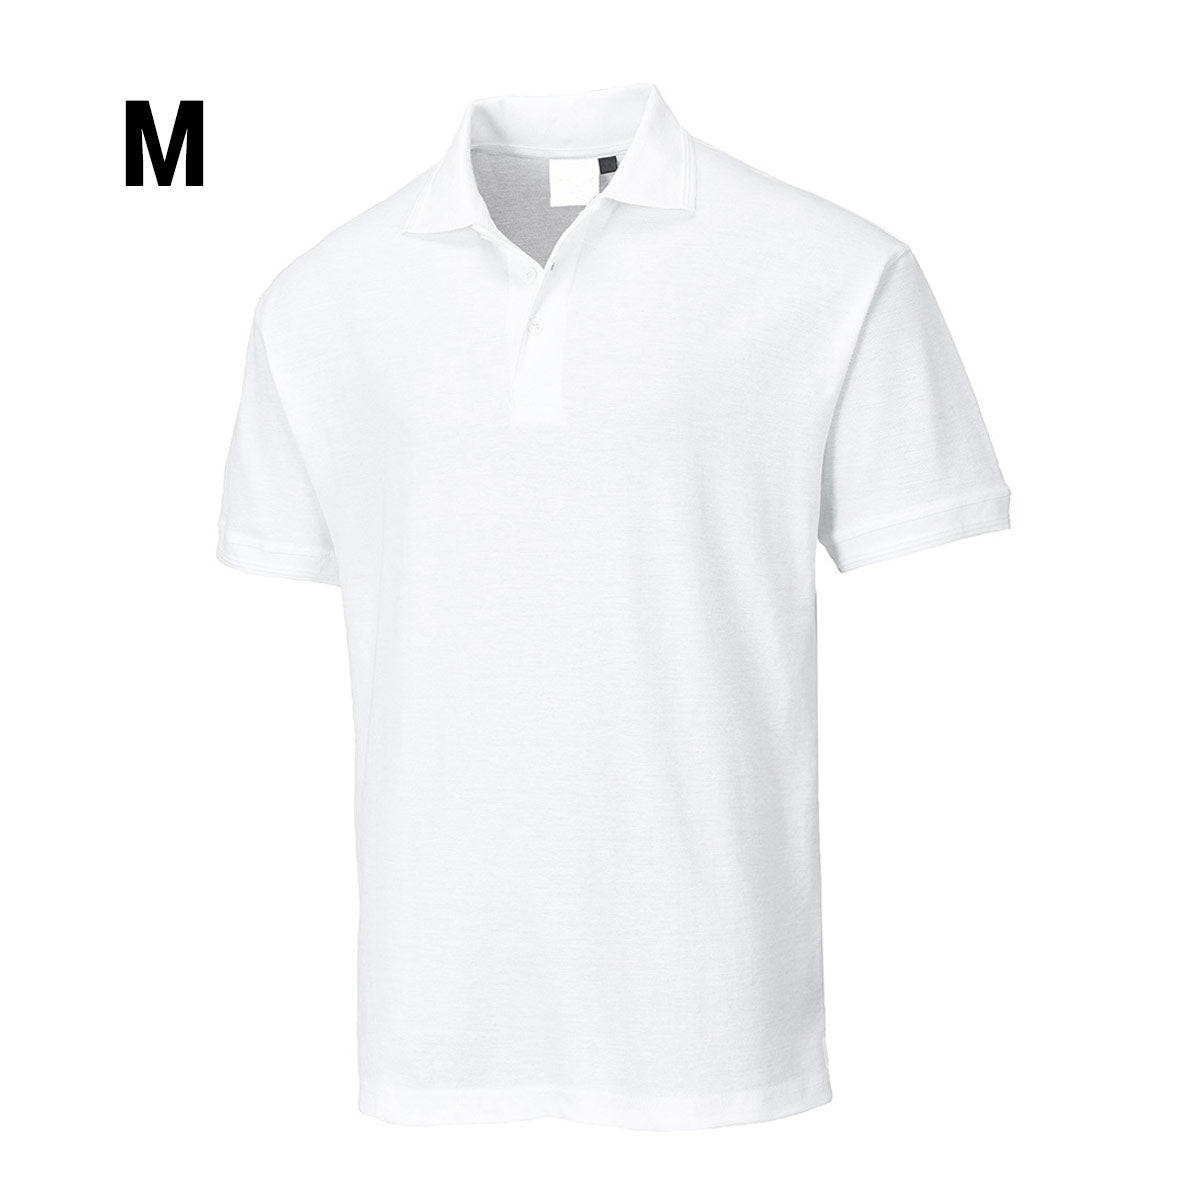 Poloshirt til mænd - Hvid - Størrelse: M